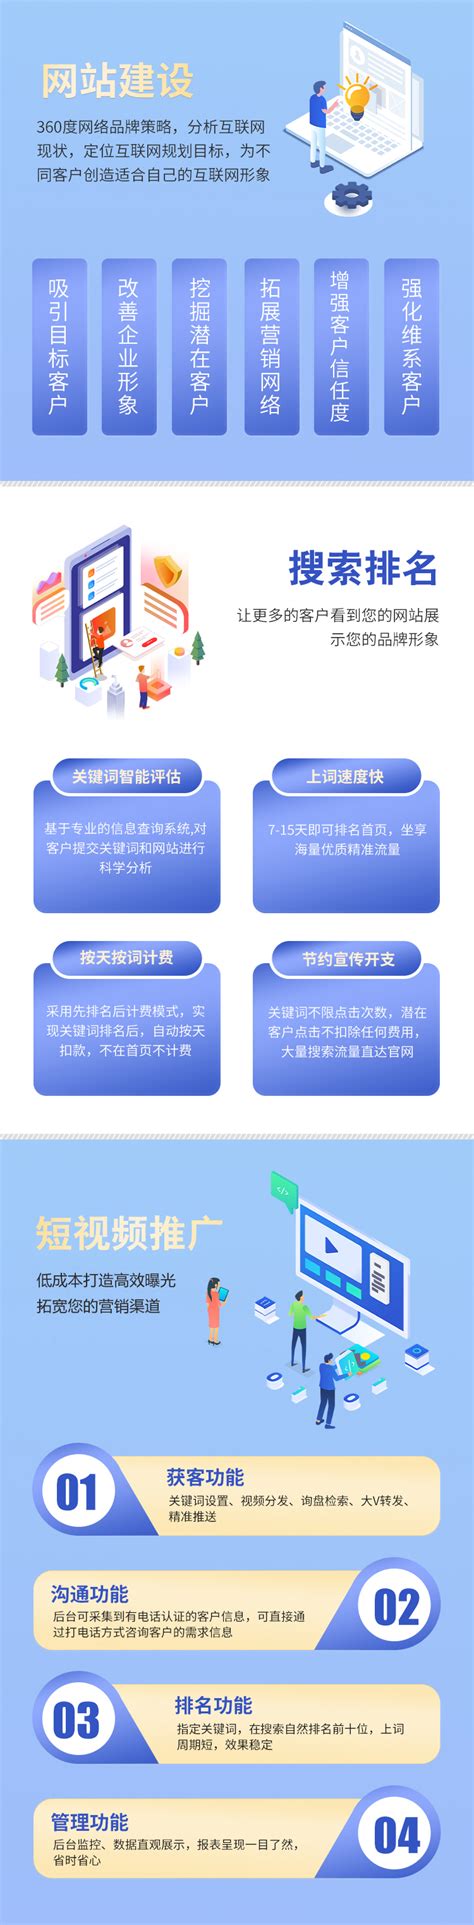 贵州网站建设的几个步骤